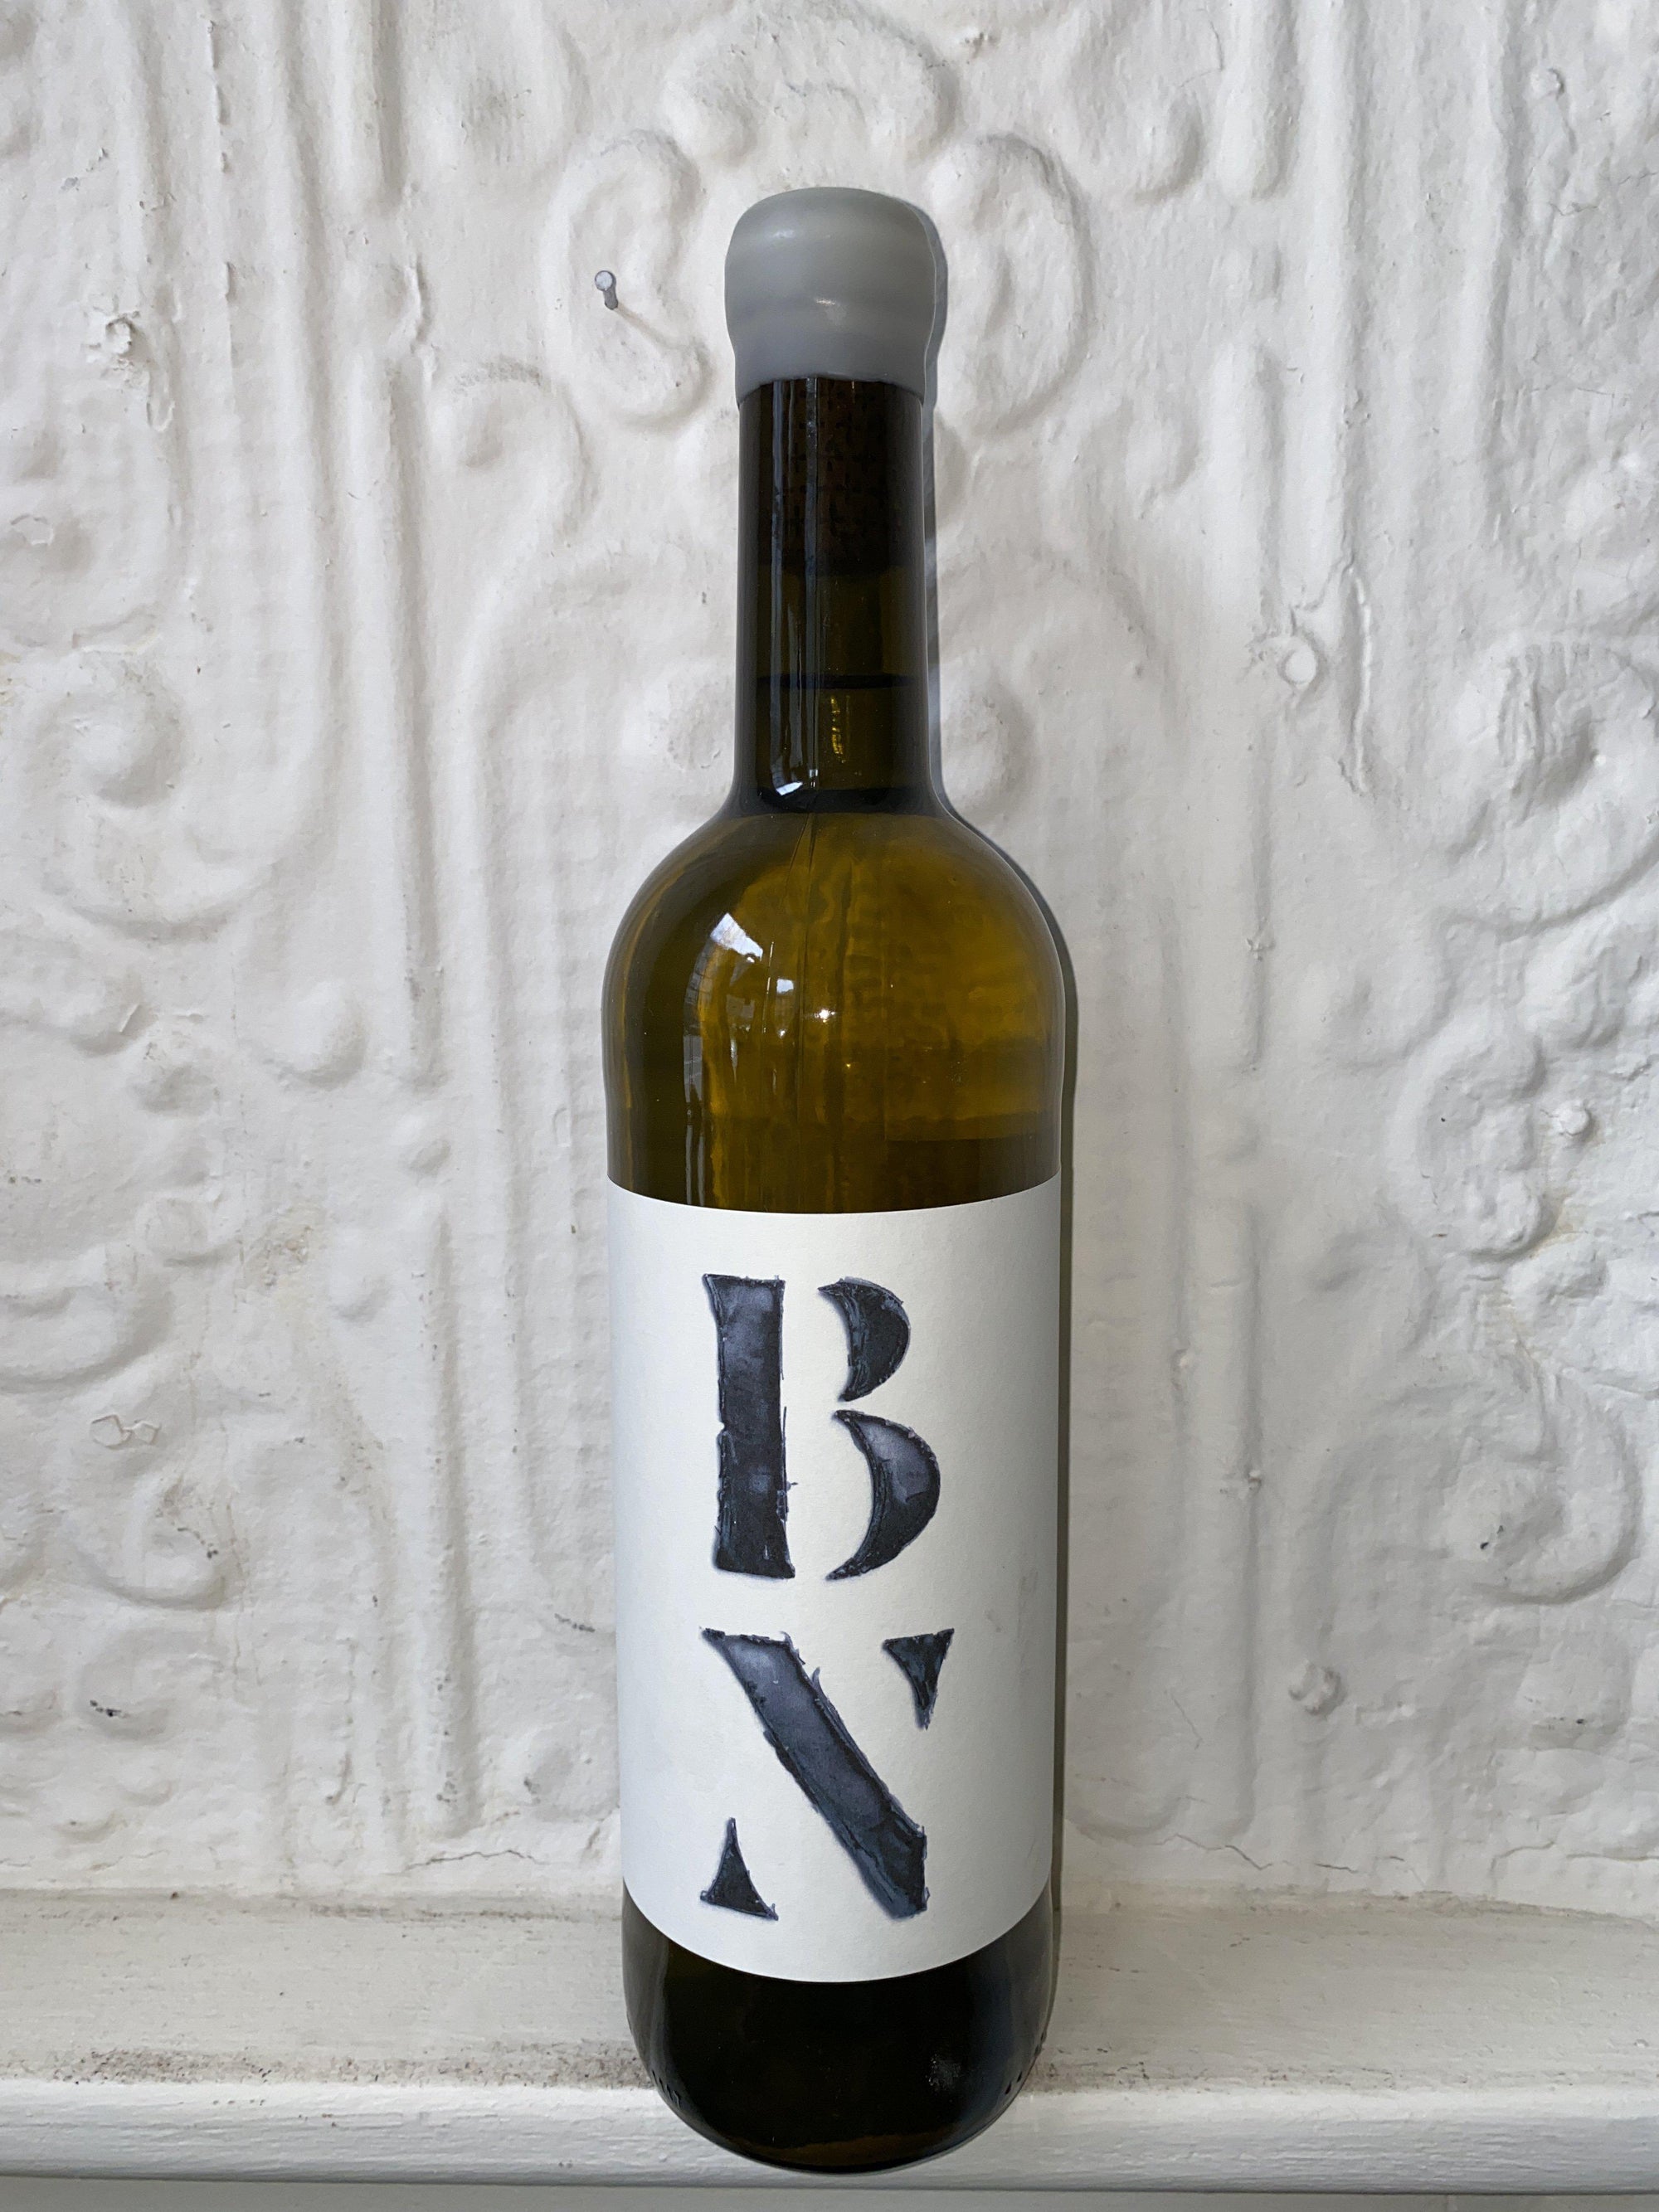 BN, Partida Creus 2019 (Catalunya, Spain)-Wine-Bibber & Bell